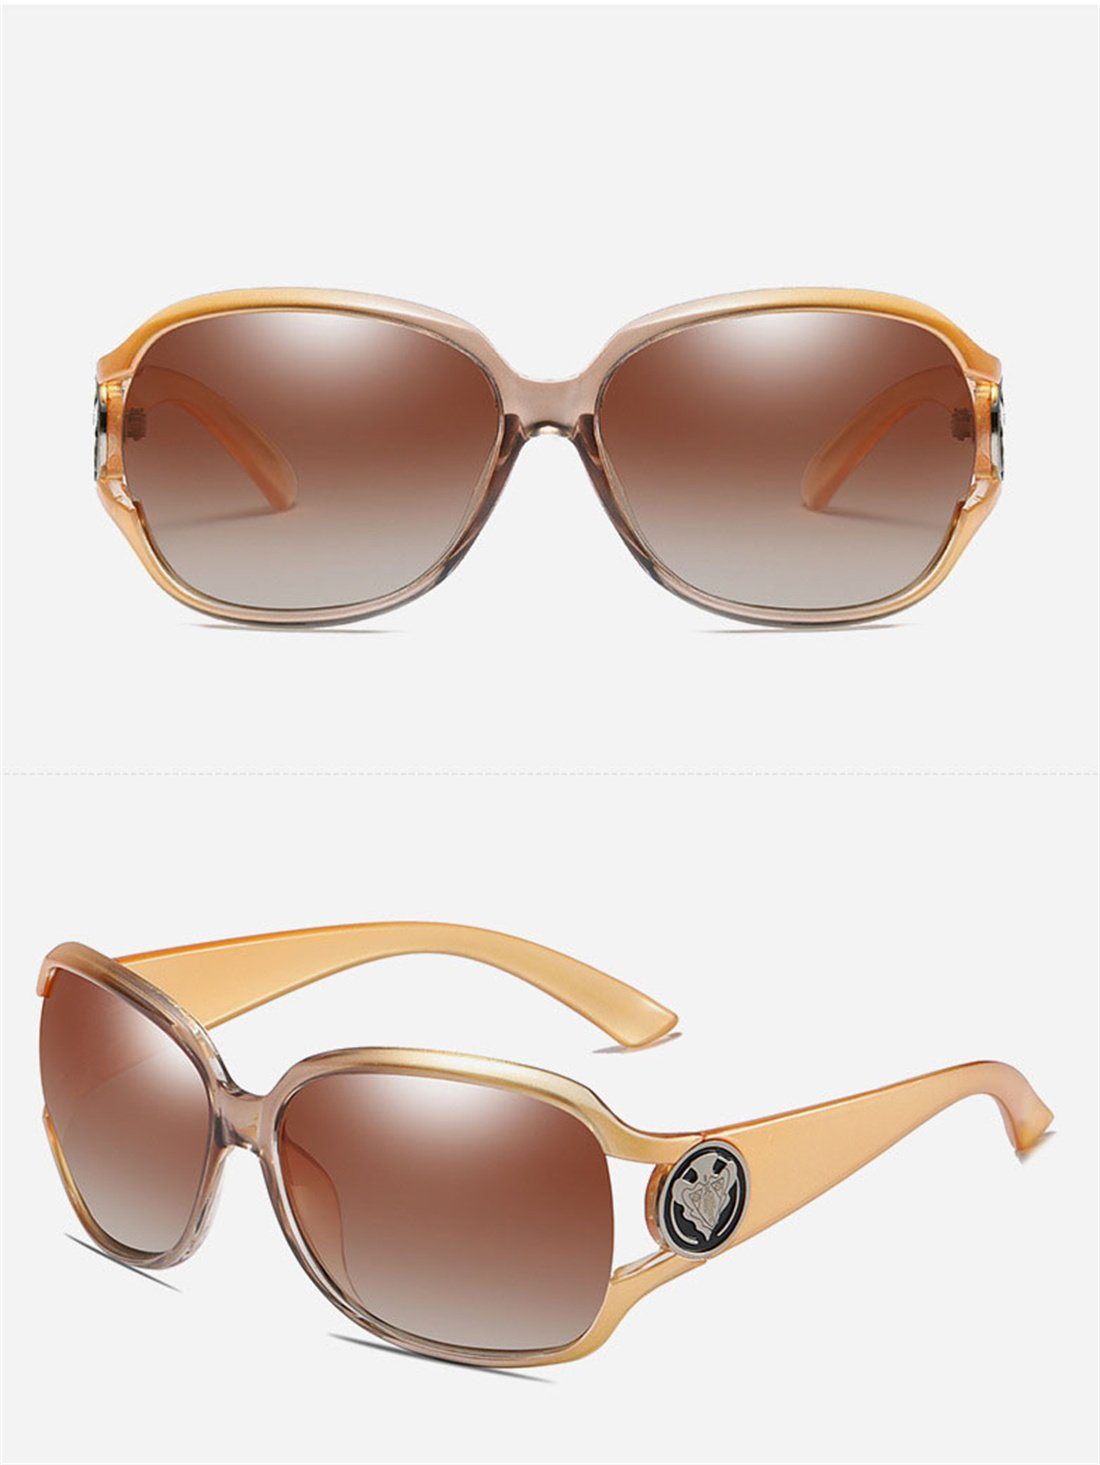 DÖRÖY Sonnenbrille Frauen, Polarisierende Sonnenbrillen für Outdoor-Sonnenbrillen